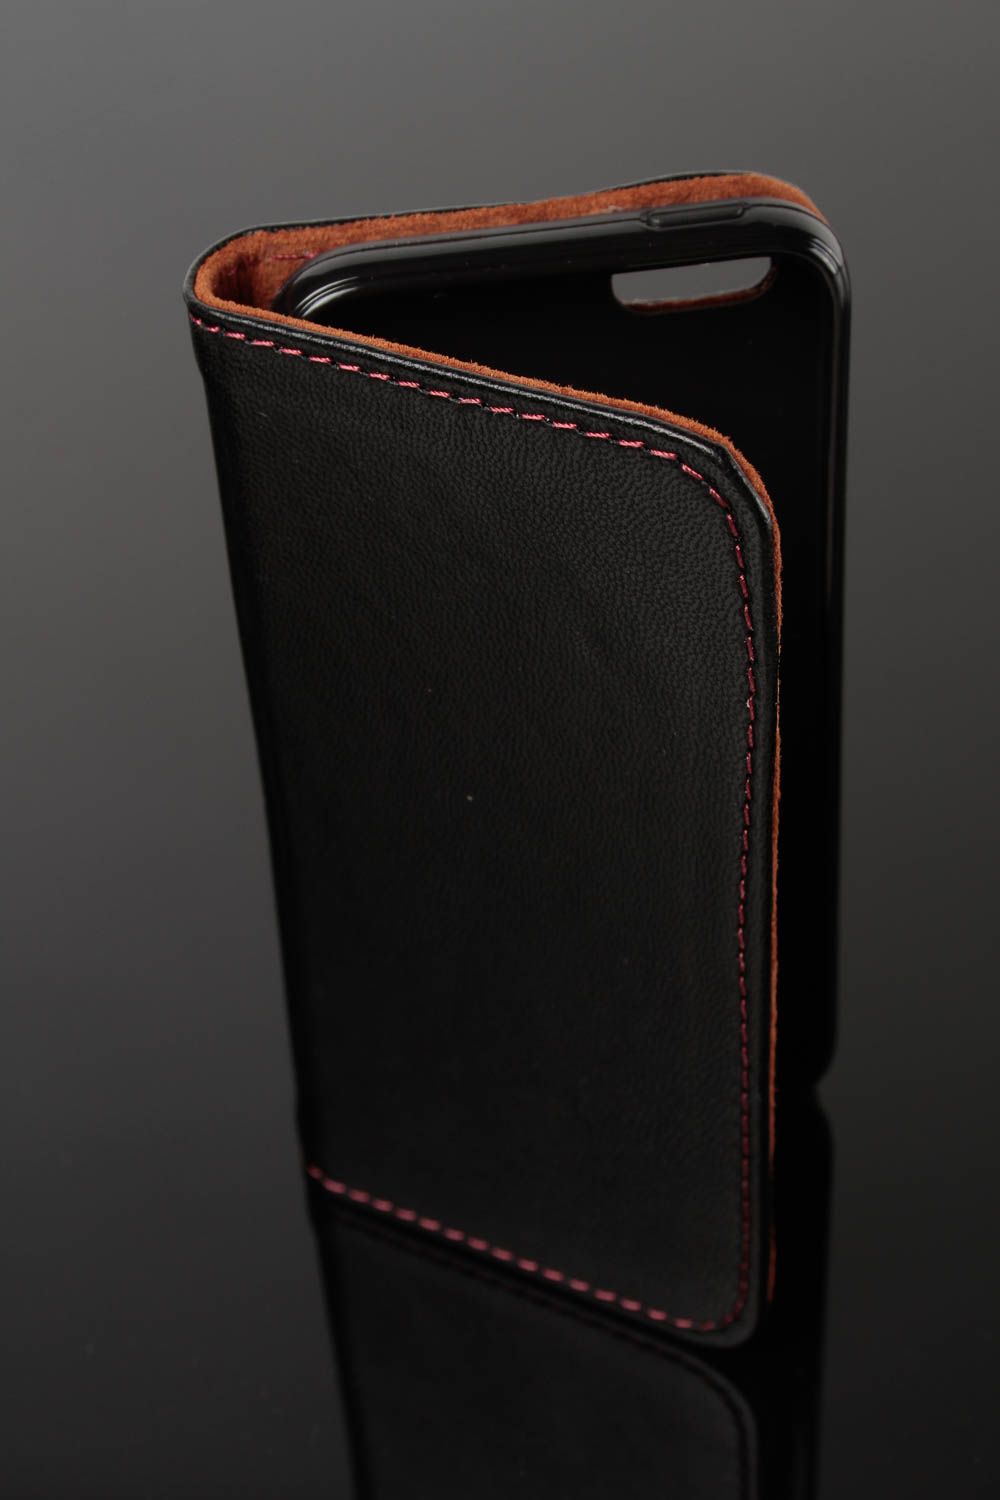 Чехол на телефон хэнд мэйд аксессуар для смартфона кожаный чехол черный фото 2